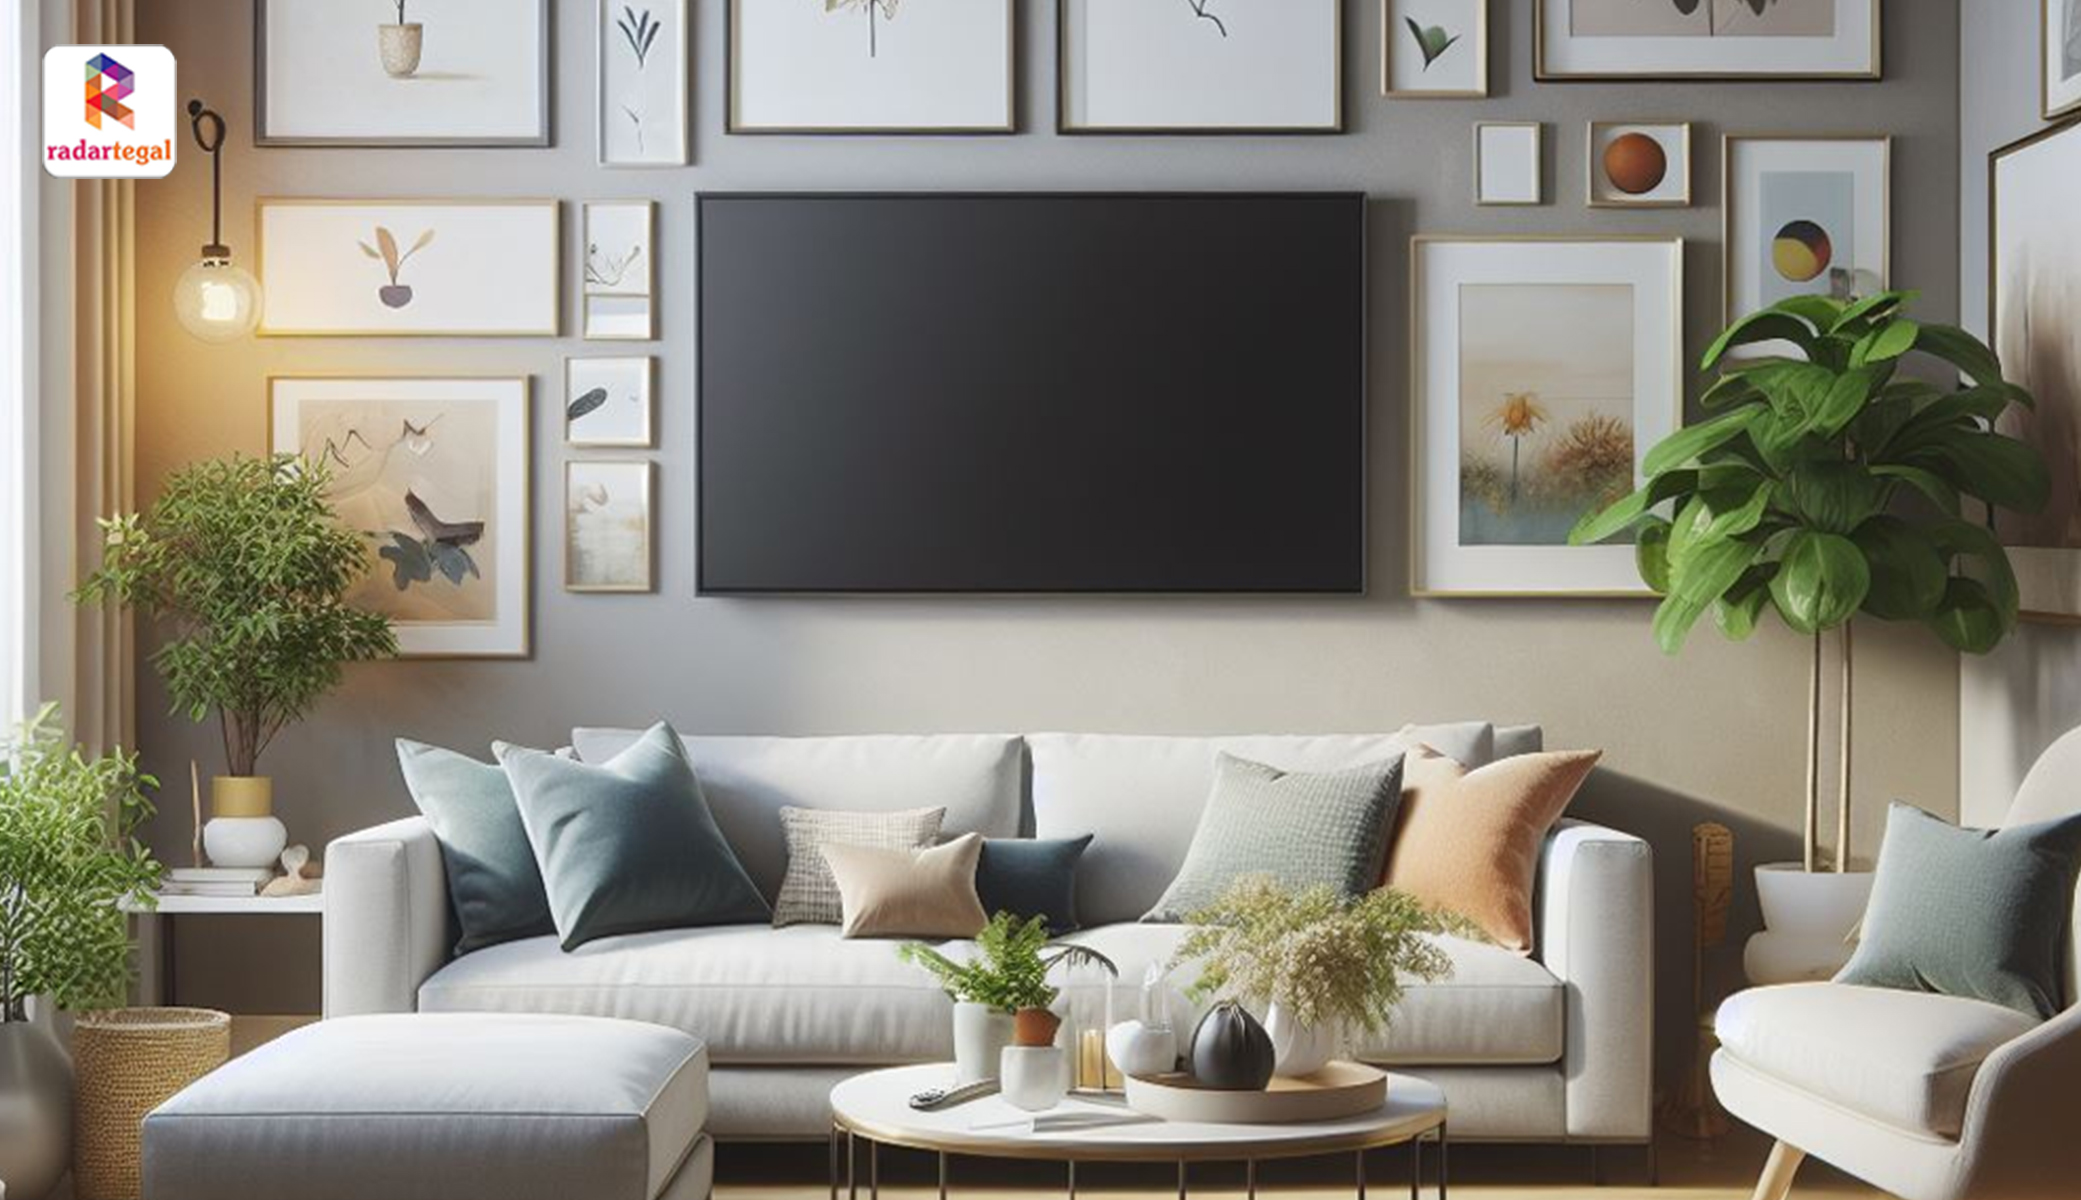 3 Smart TV Samsung 32 Inch Terbaik Fitur Canggih, Cocok untuk Lengkapi Suasana Ruang Keluarga Anda